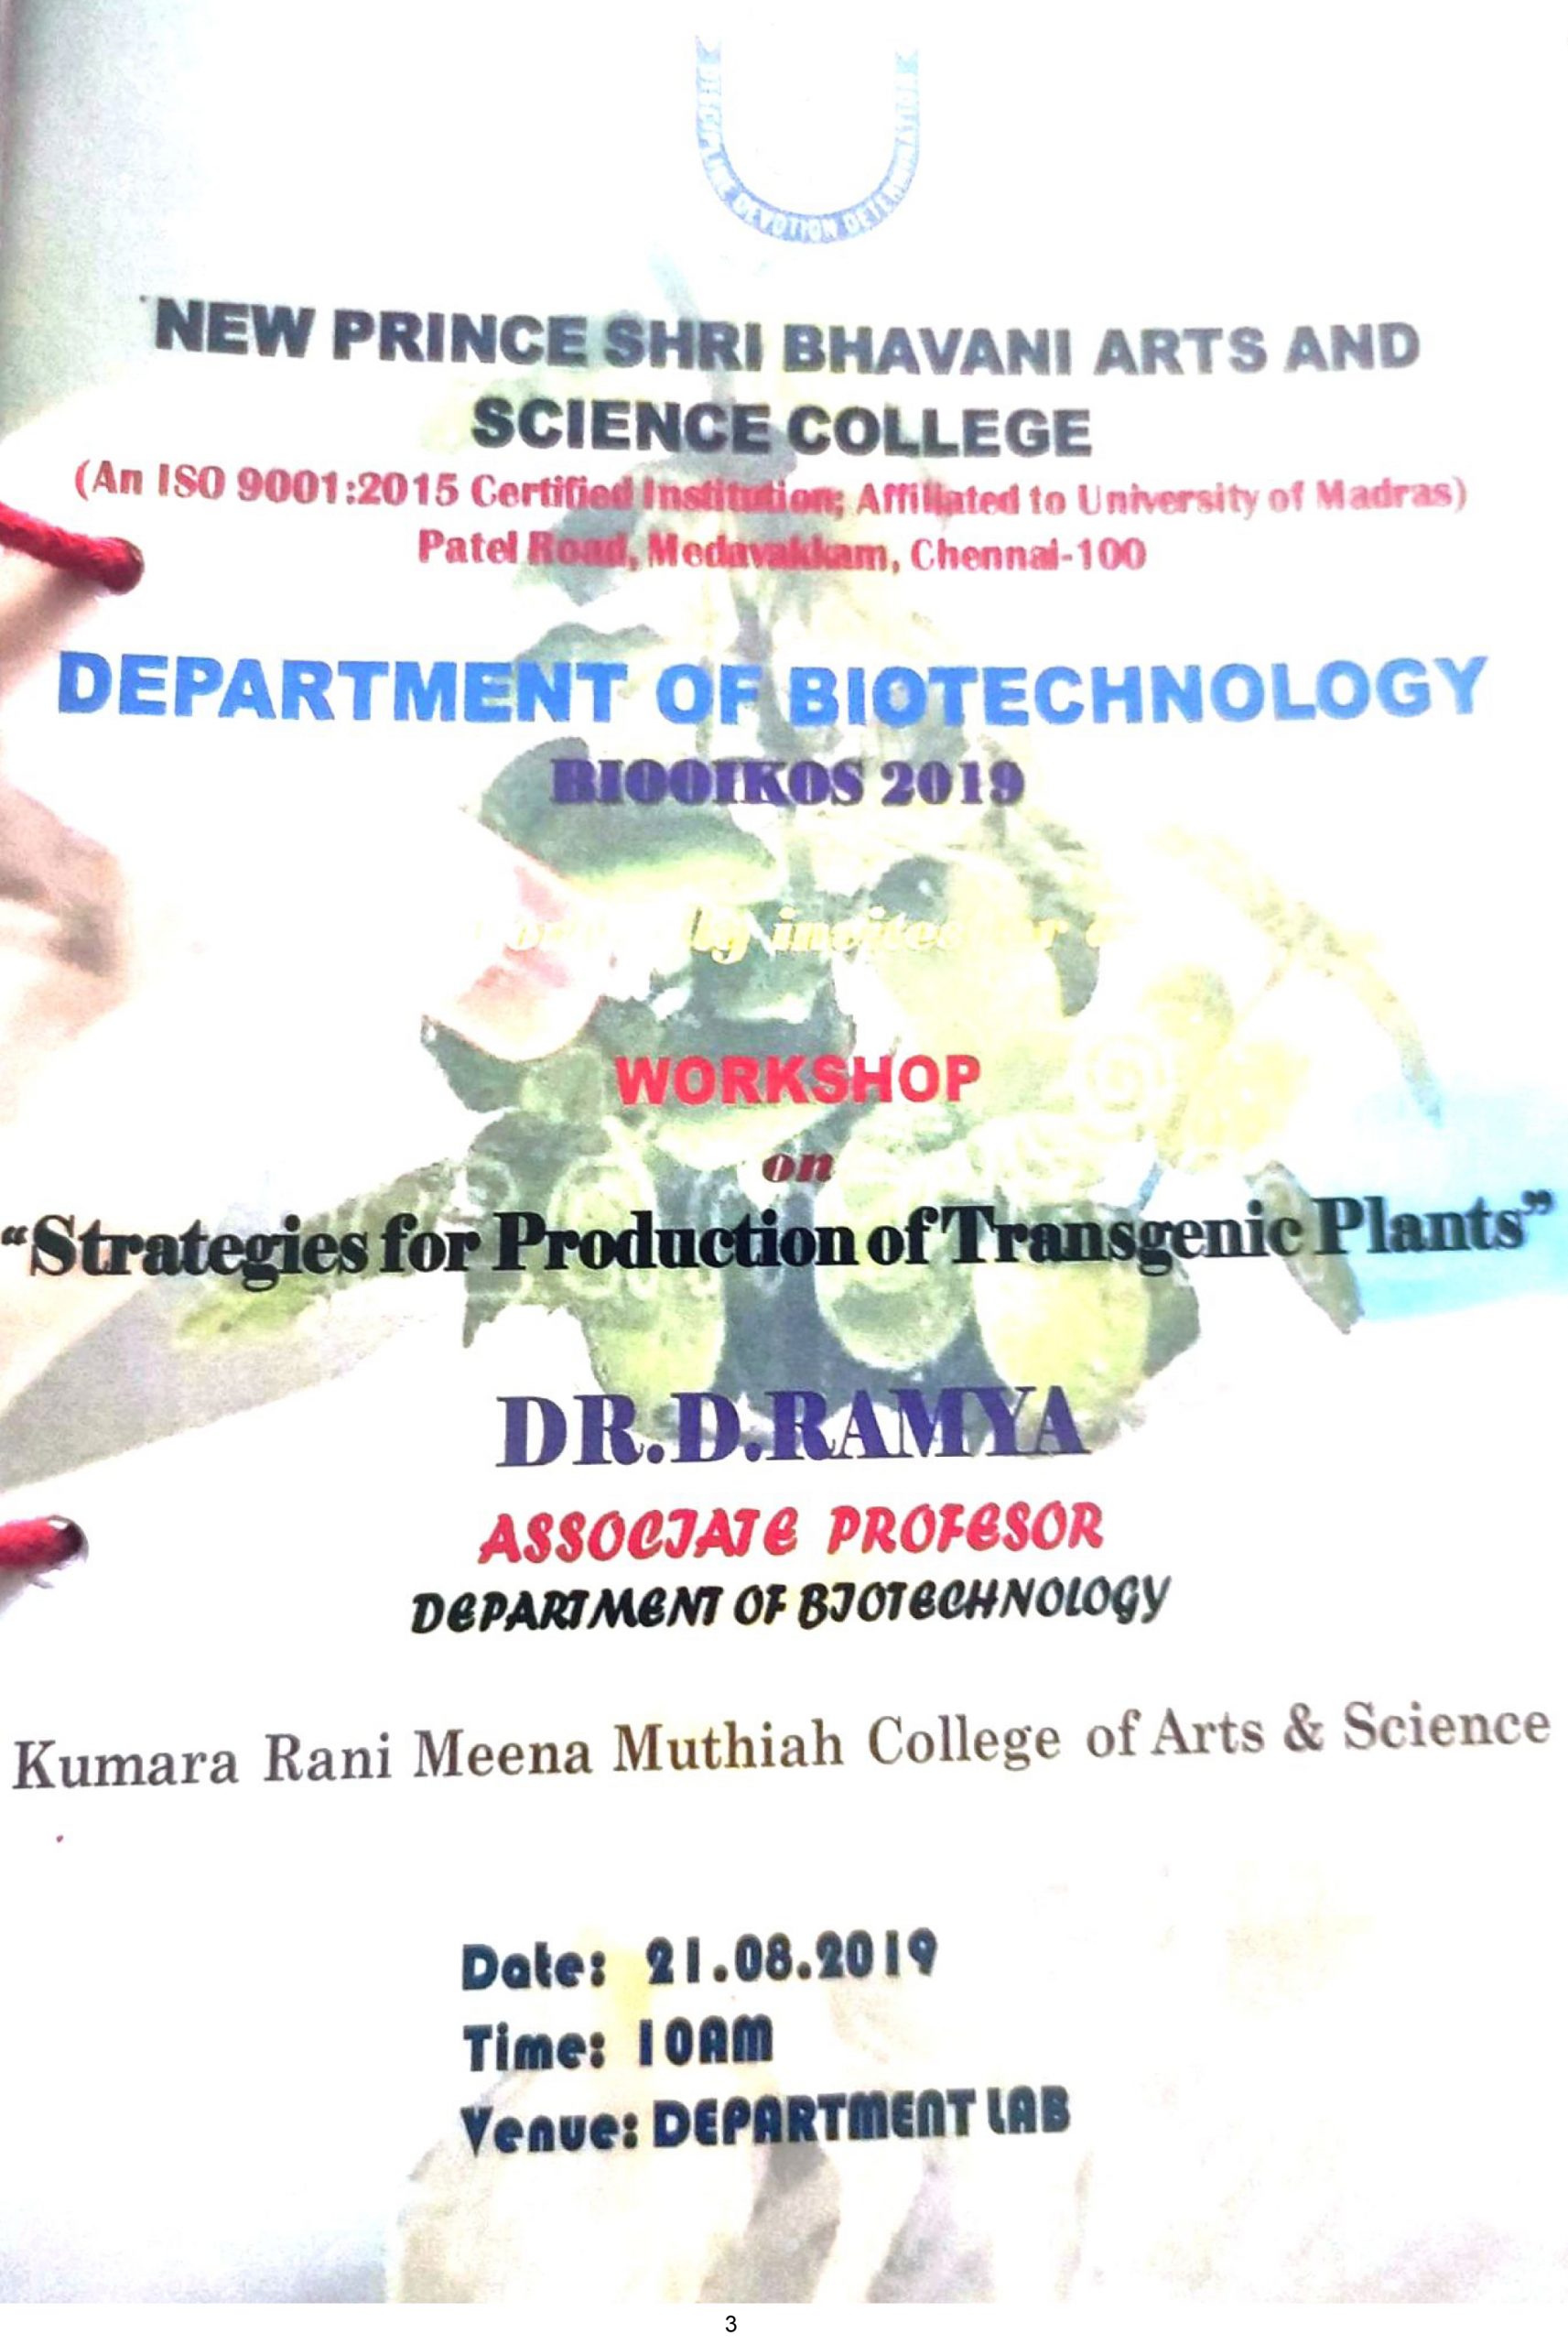 Dept. of Biotechnology-Work Shop-21-08-19